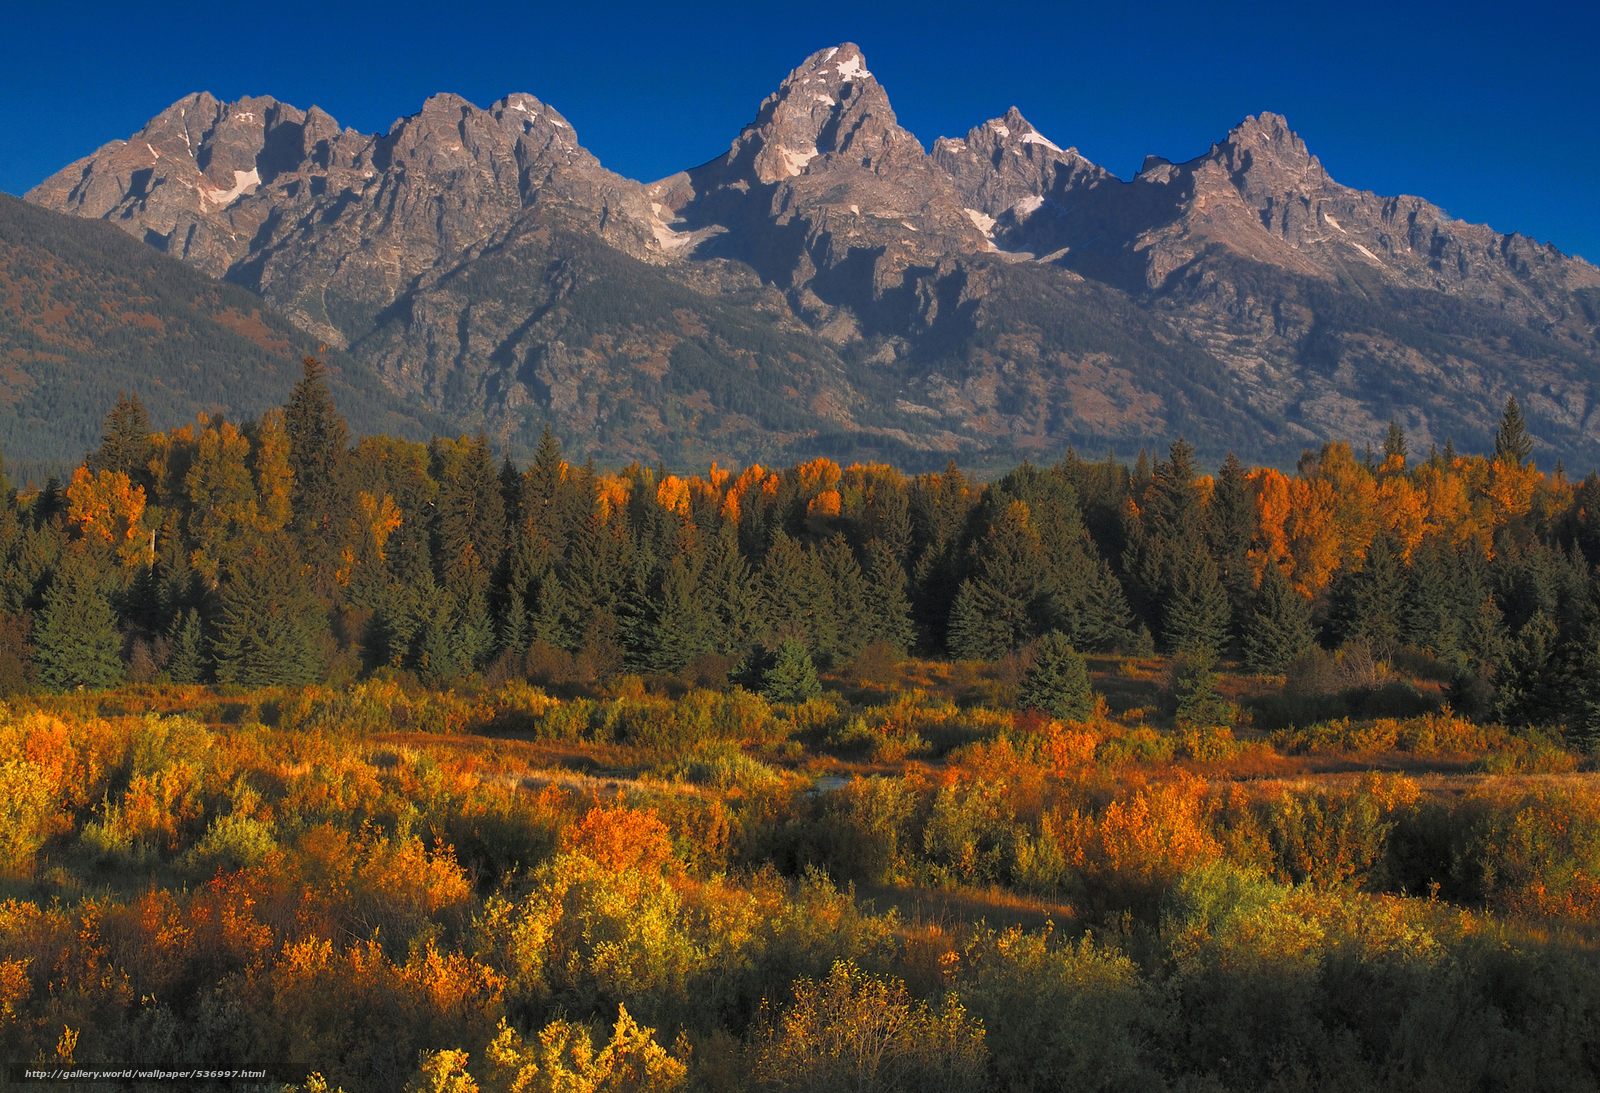 Download wallpaper Grand Teton Wyoming USA free desktop wallpaper in